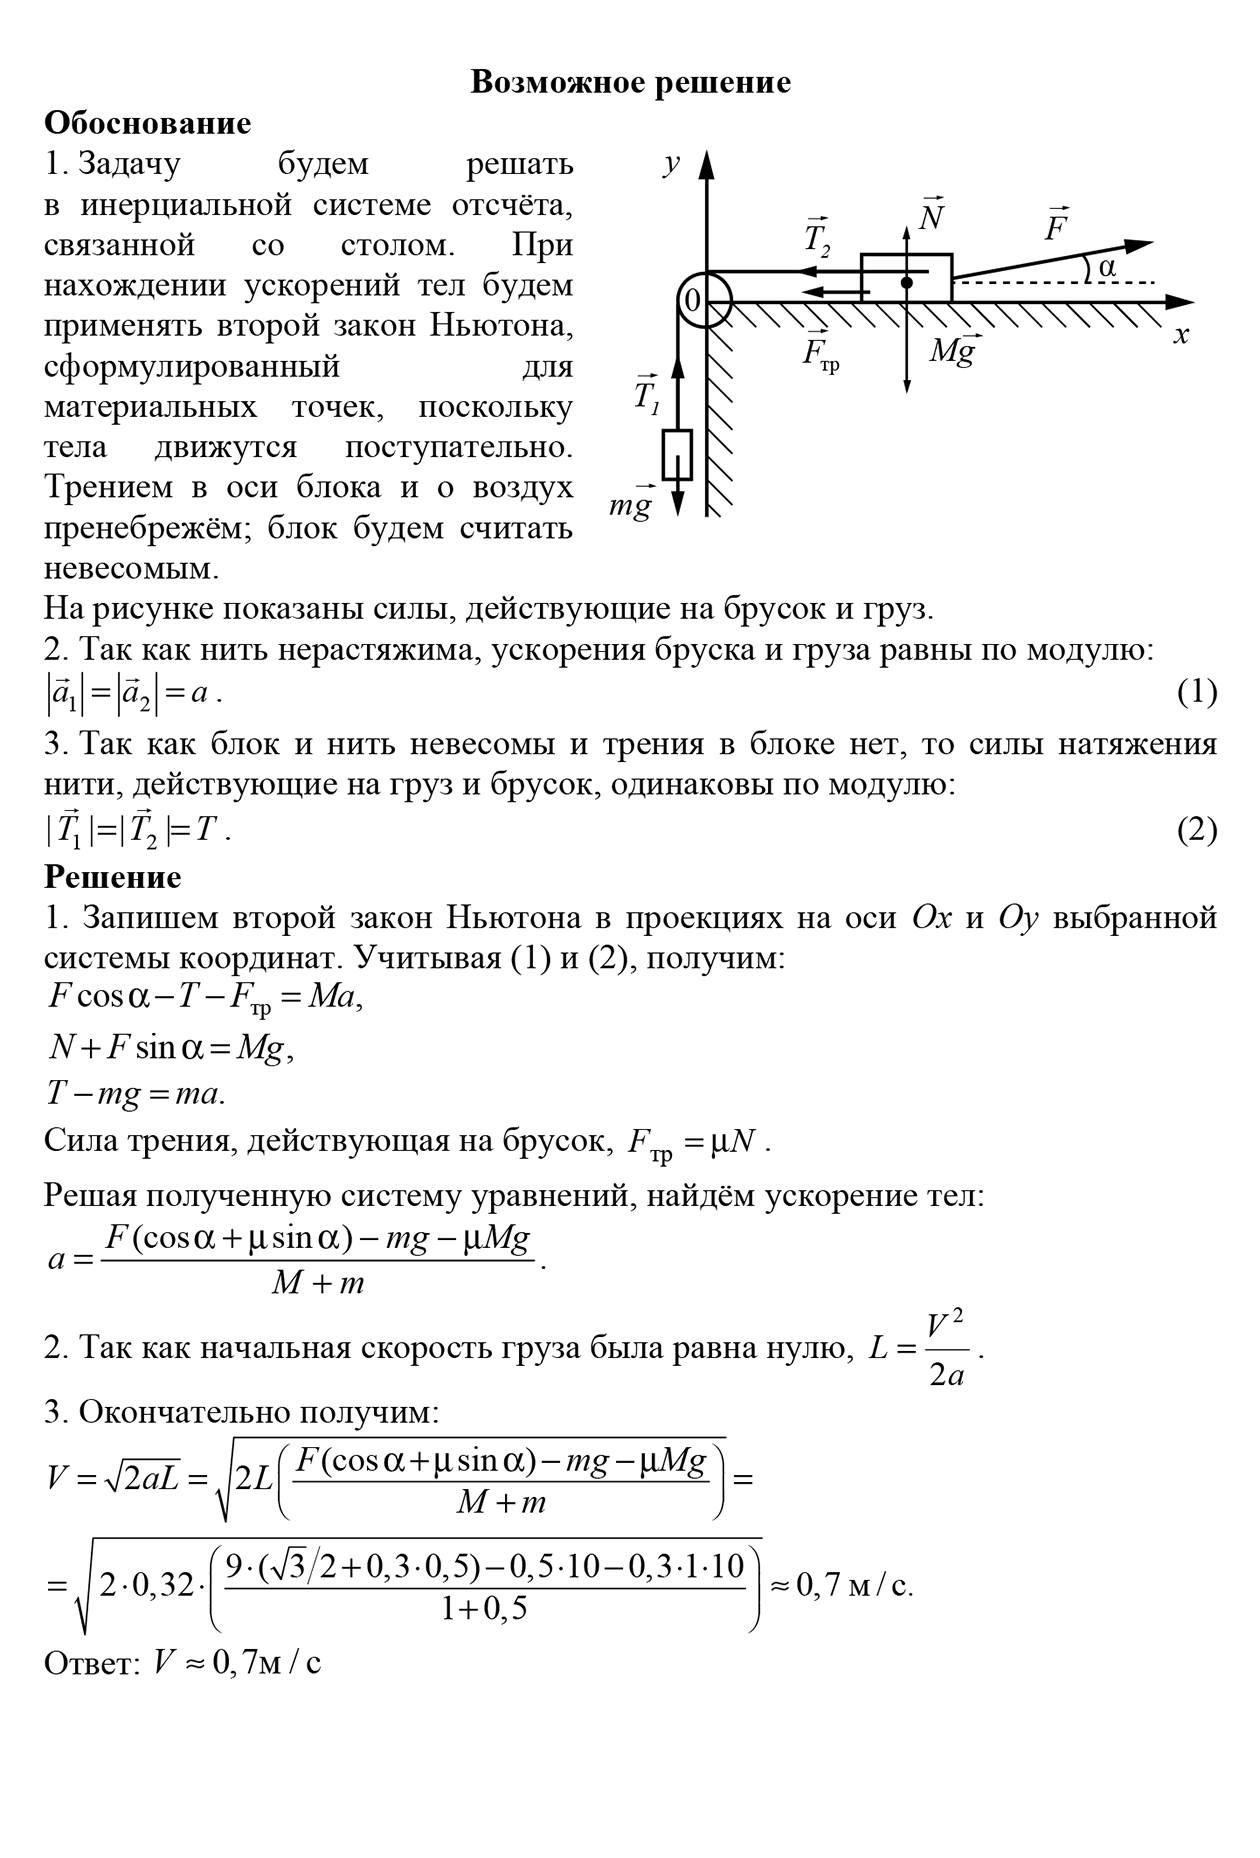 Пример решения задачи 26. Источник: fipi.ru